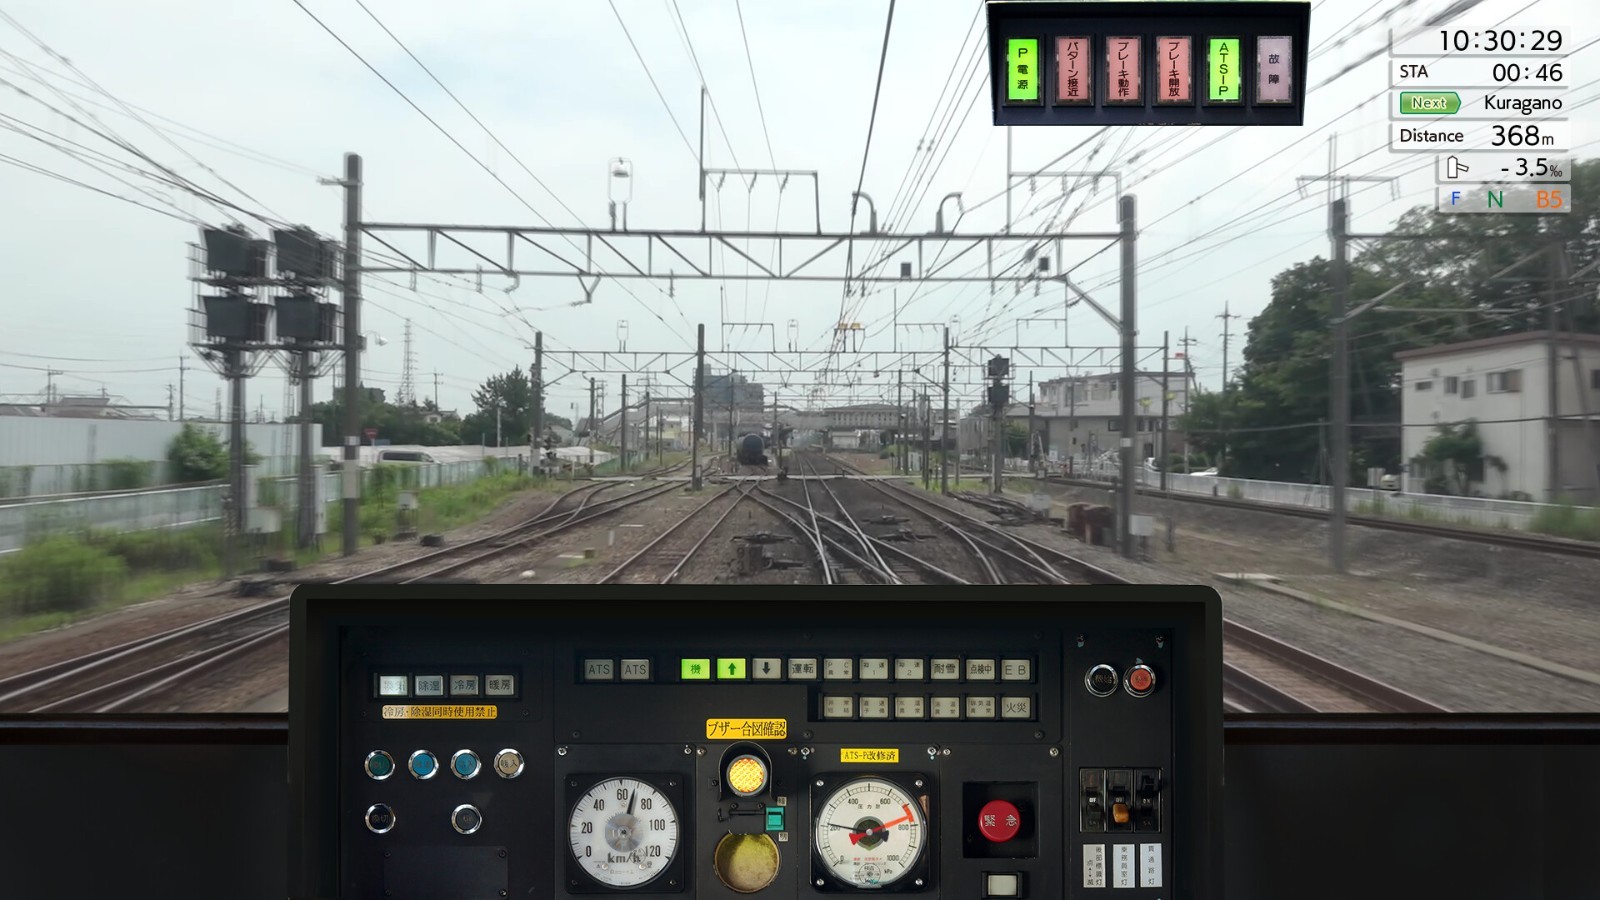 专业模拟开电车 《JR东日本列车模拟器》Steam发售